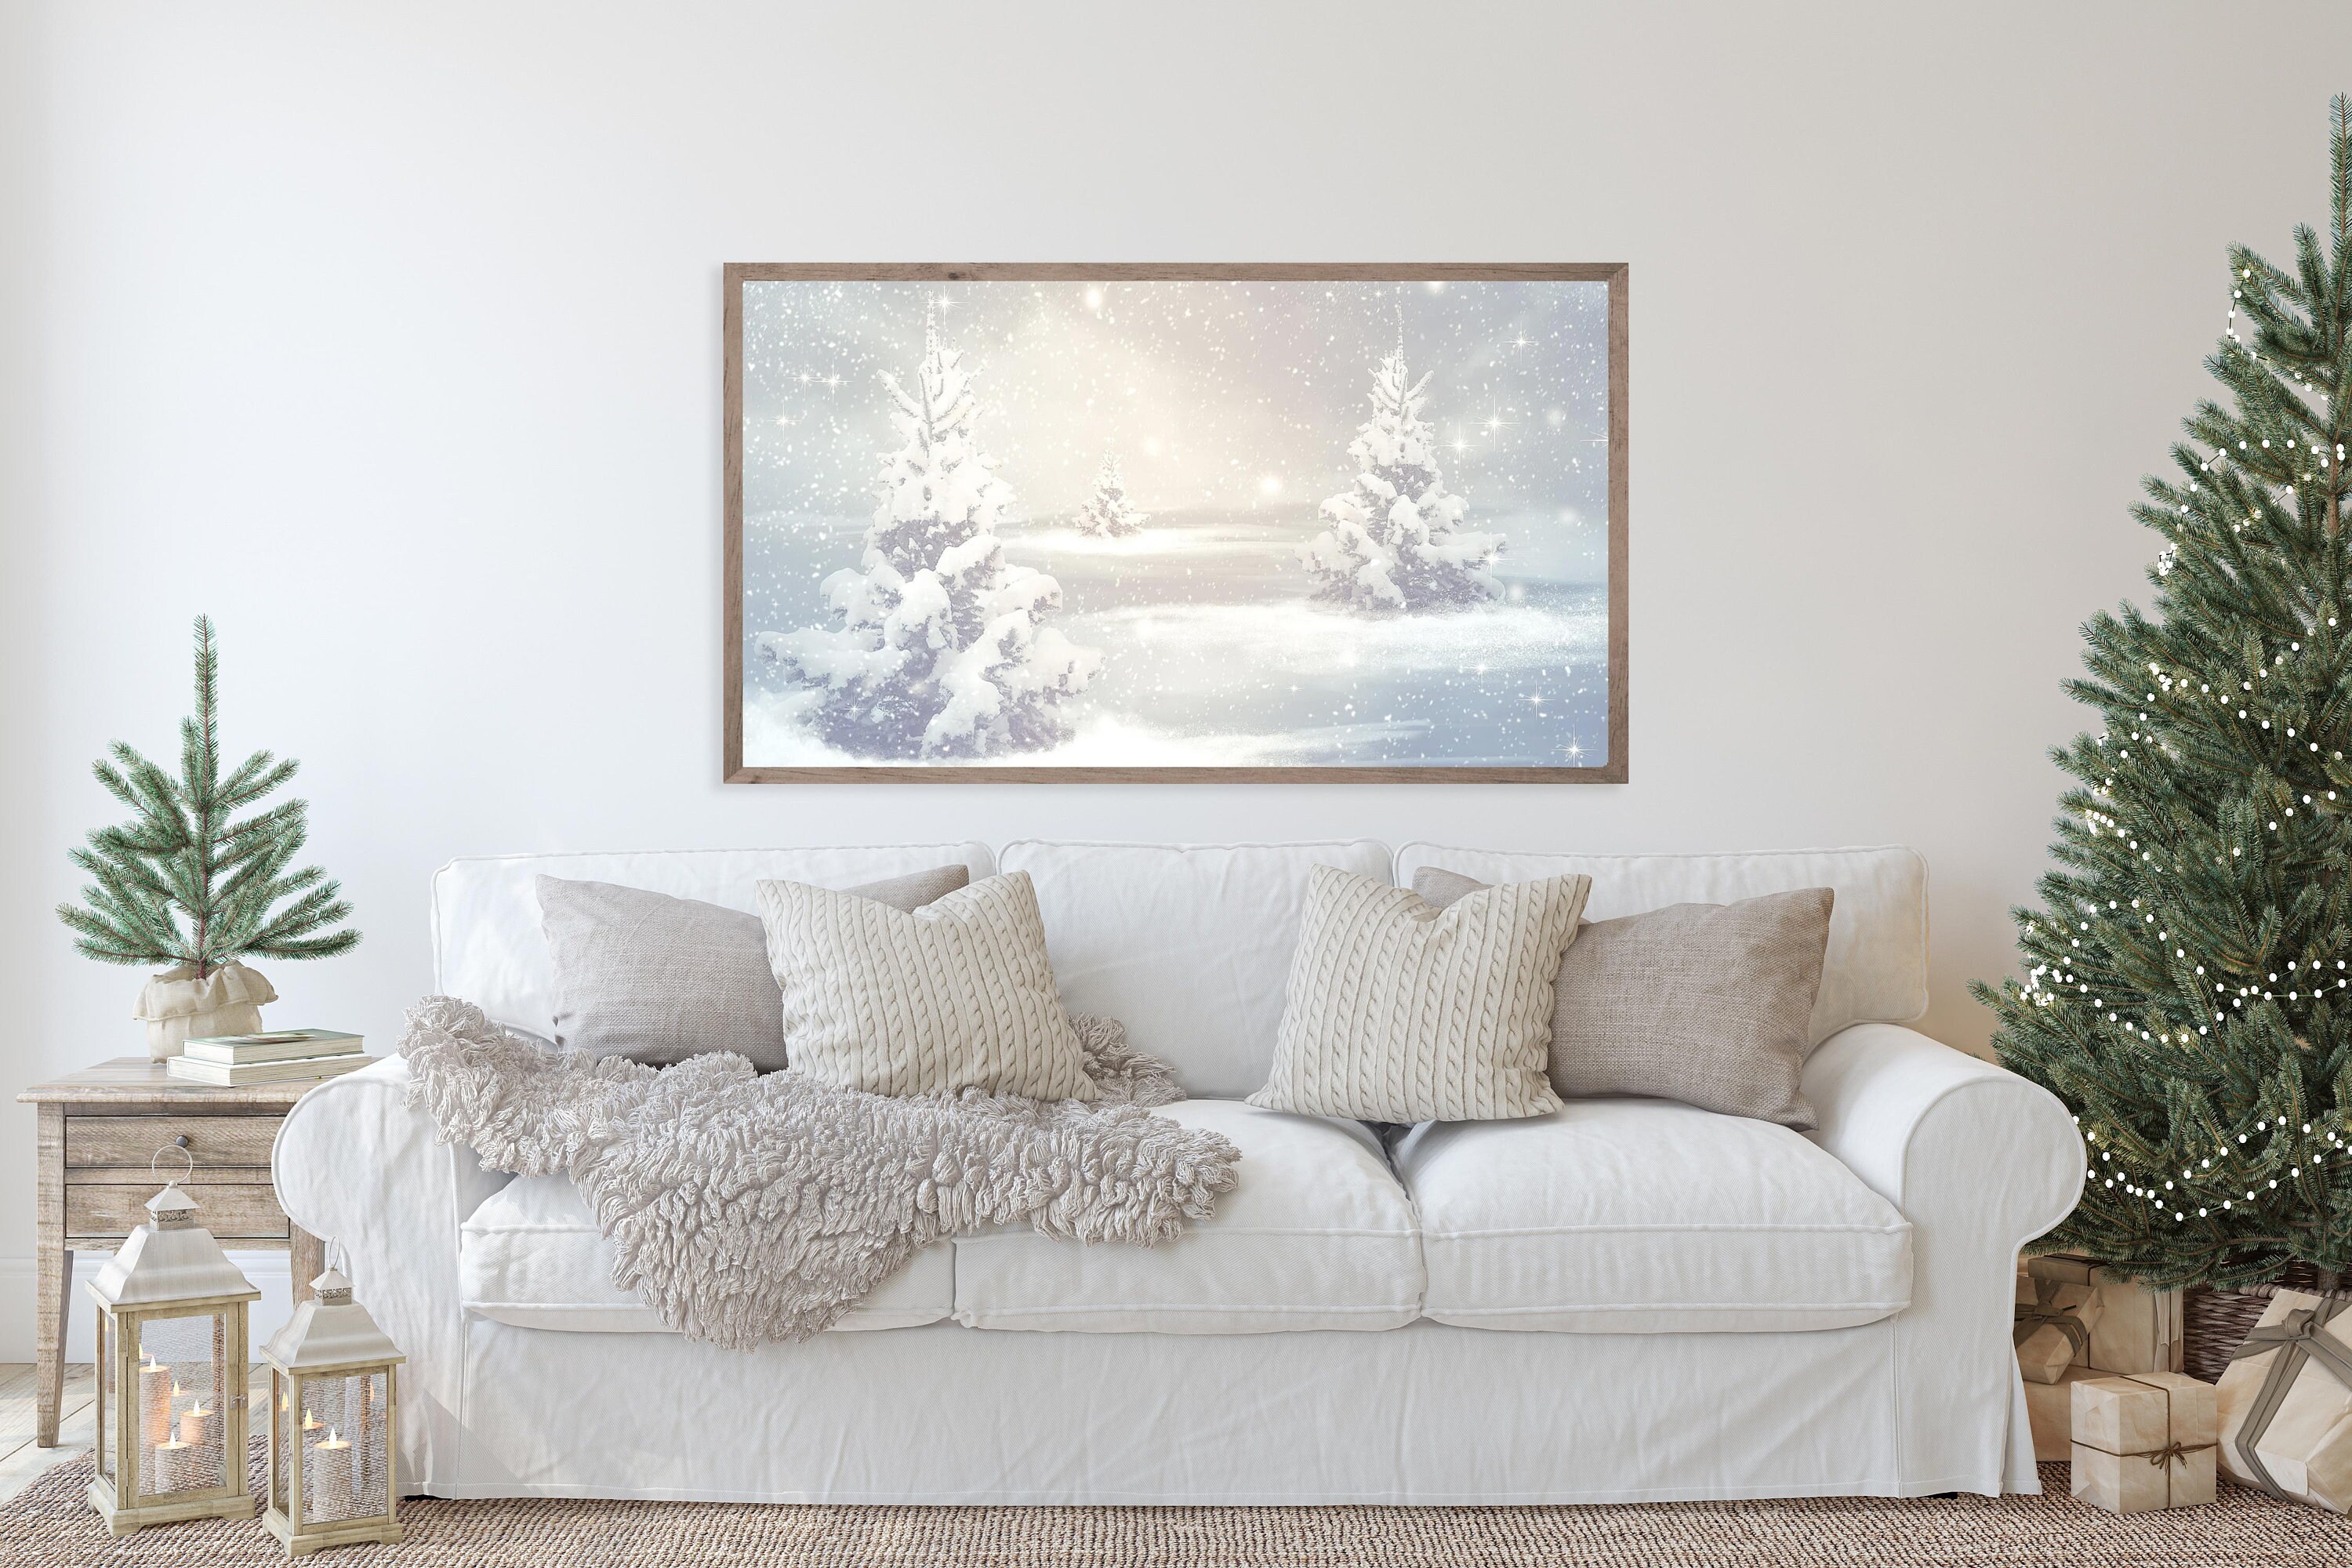 Vintage Winter Landscape Samsung Frame TV Art Instant | Etsy